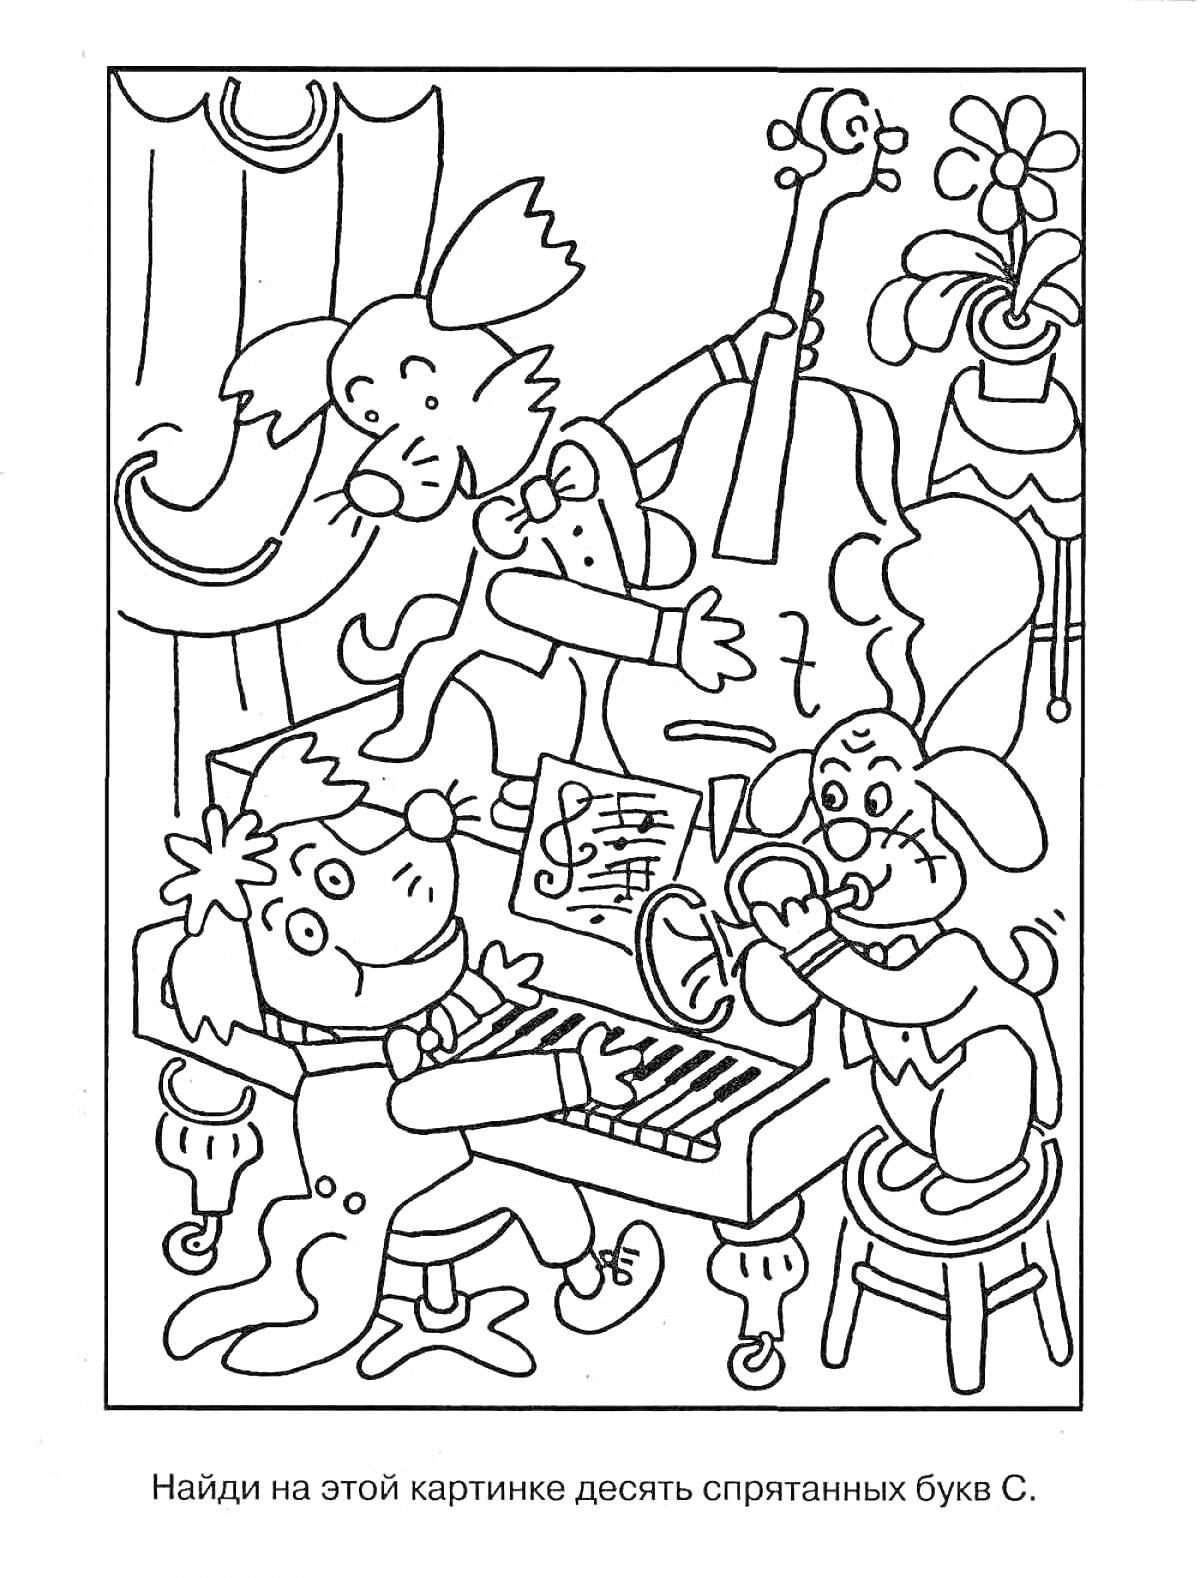 Раскраска Найди букву С среди животных-музыкантов за пианино, с нотами, скрипкой, тромбоном и цветком